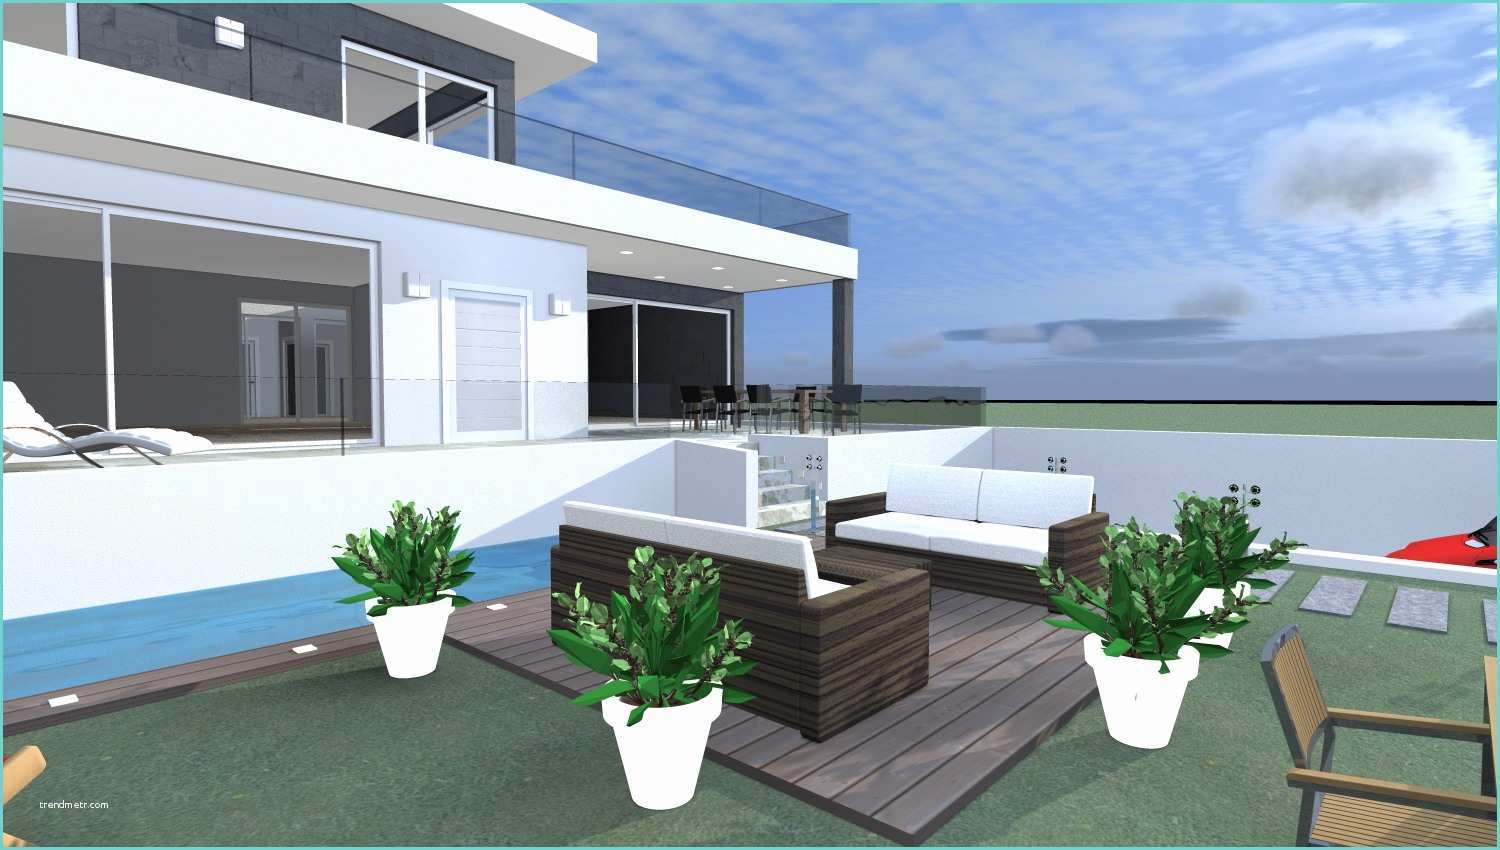 Casa Moderna Con Tetto In Legno Pro Ti 3d Costruzione Esempi Di Pro Ti Online Di